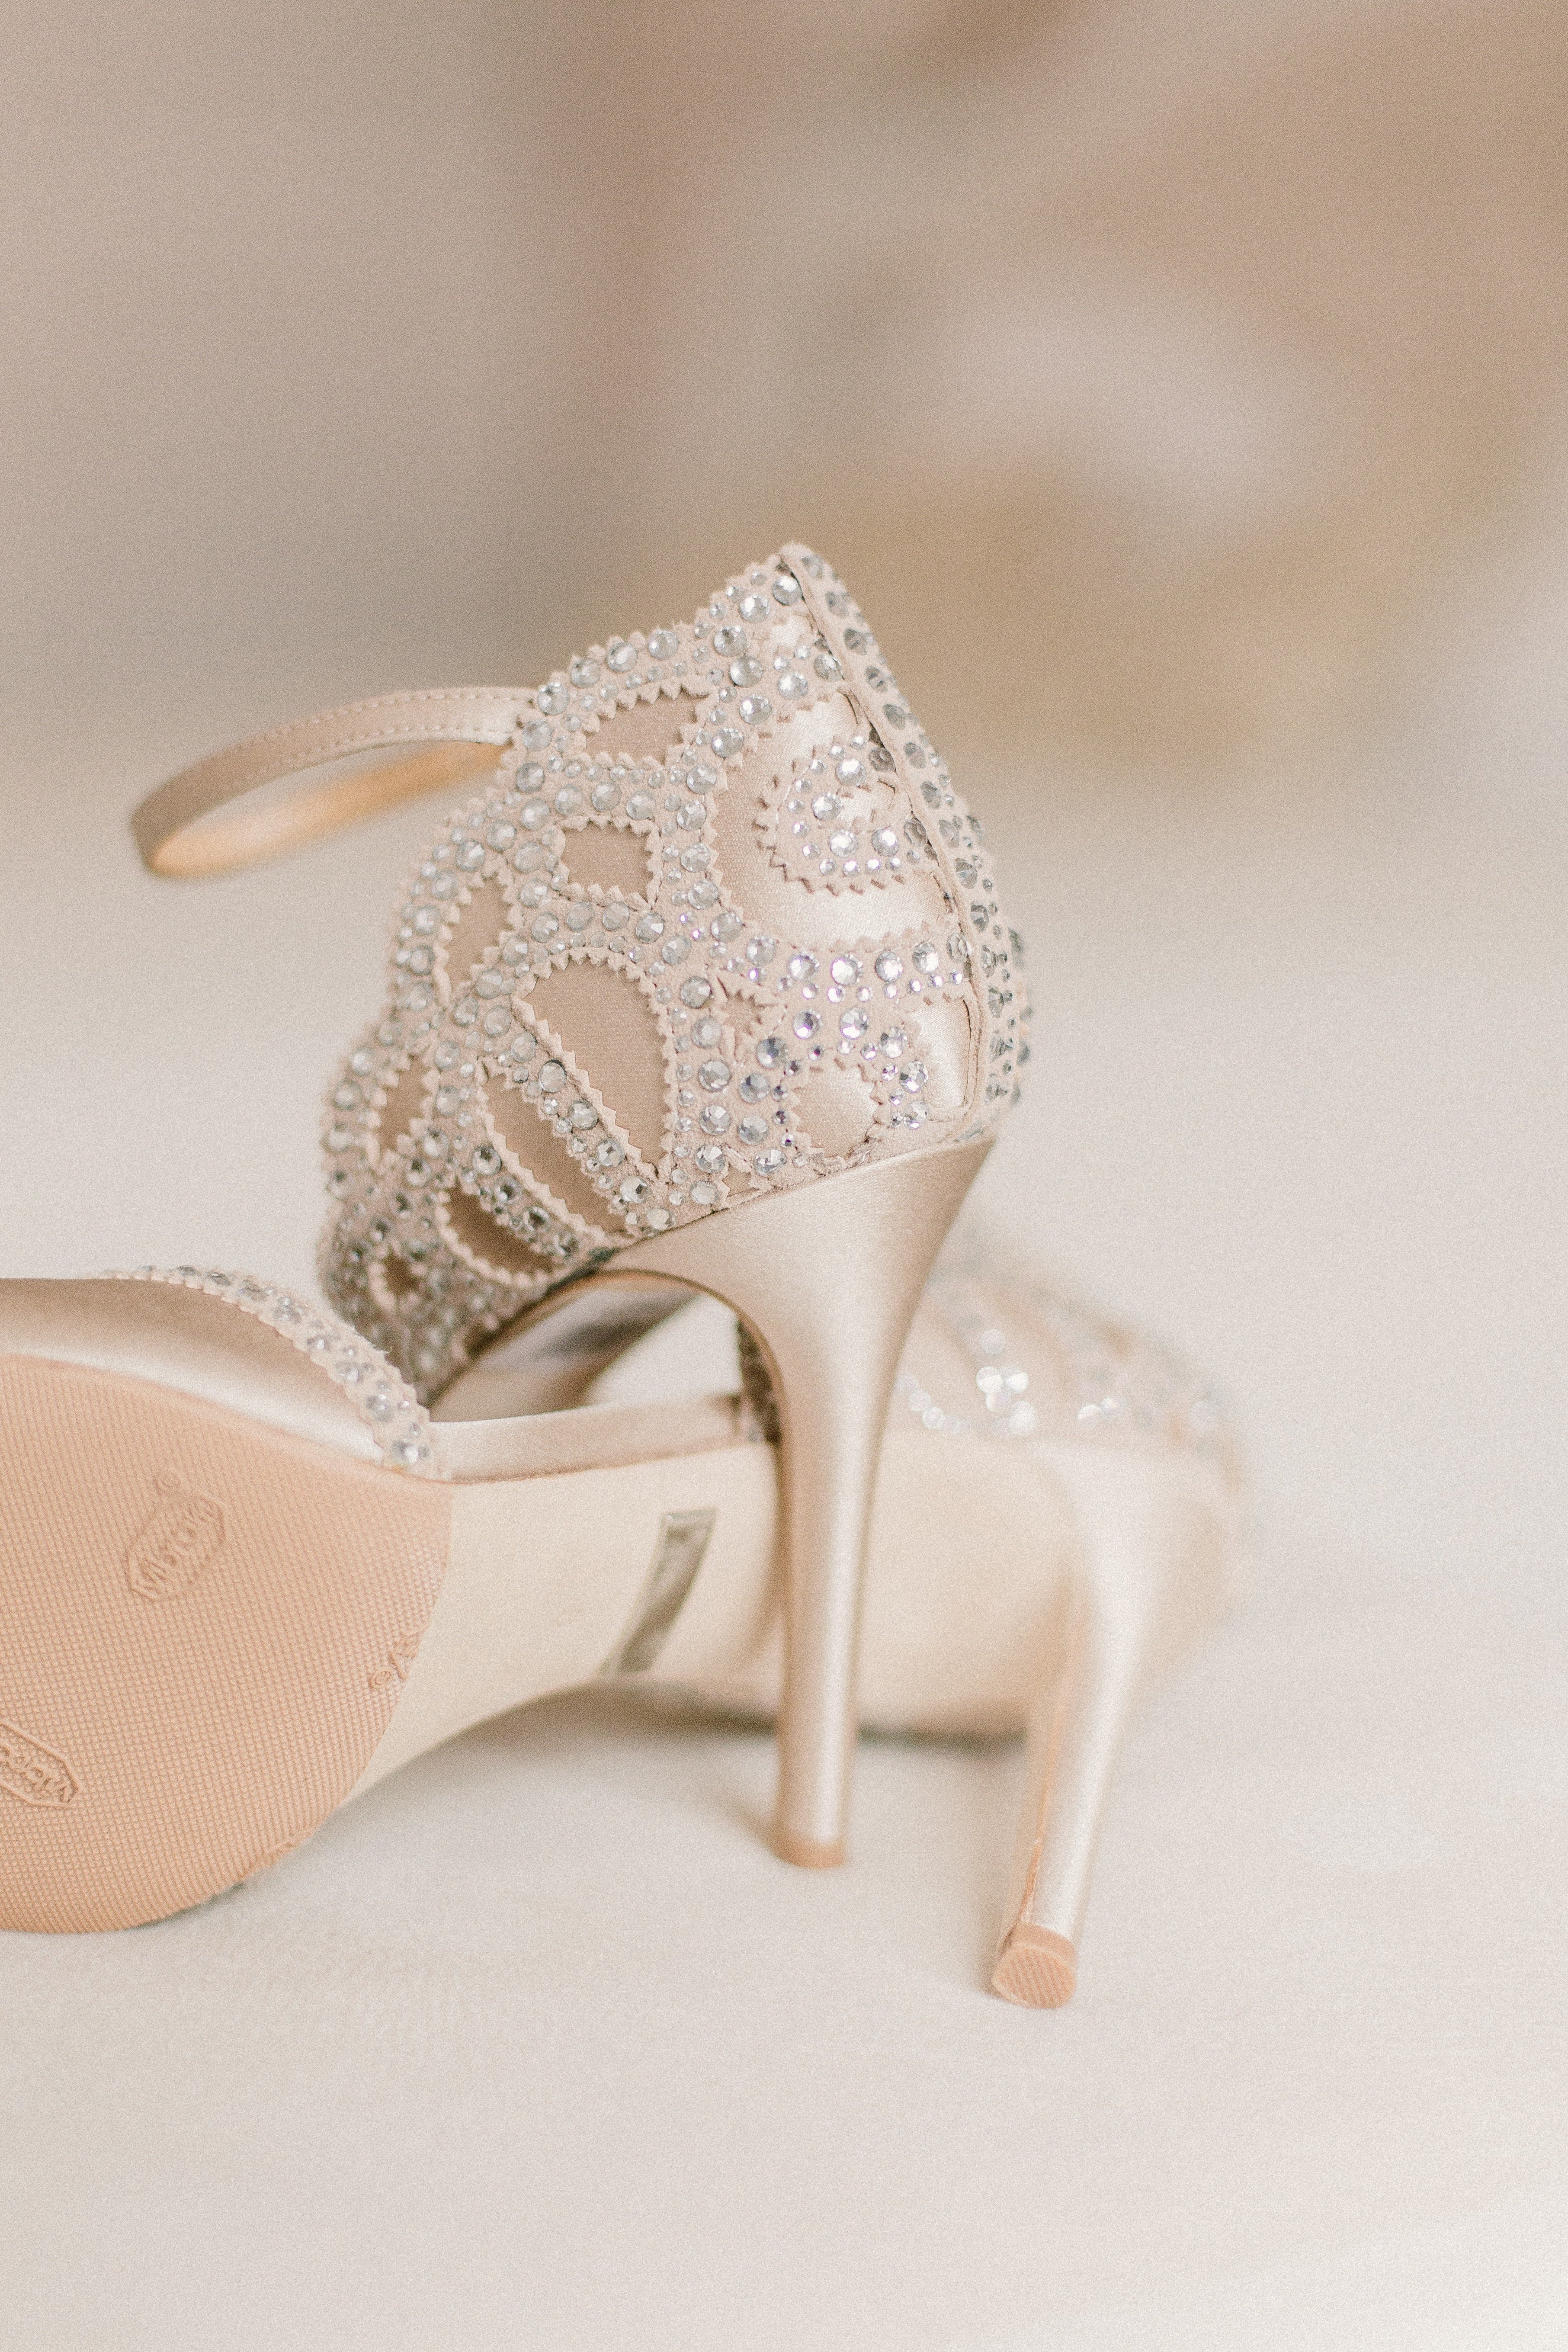 Le mari donnerait-il ses chaussures ? | Photo : Pexels